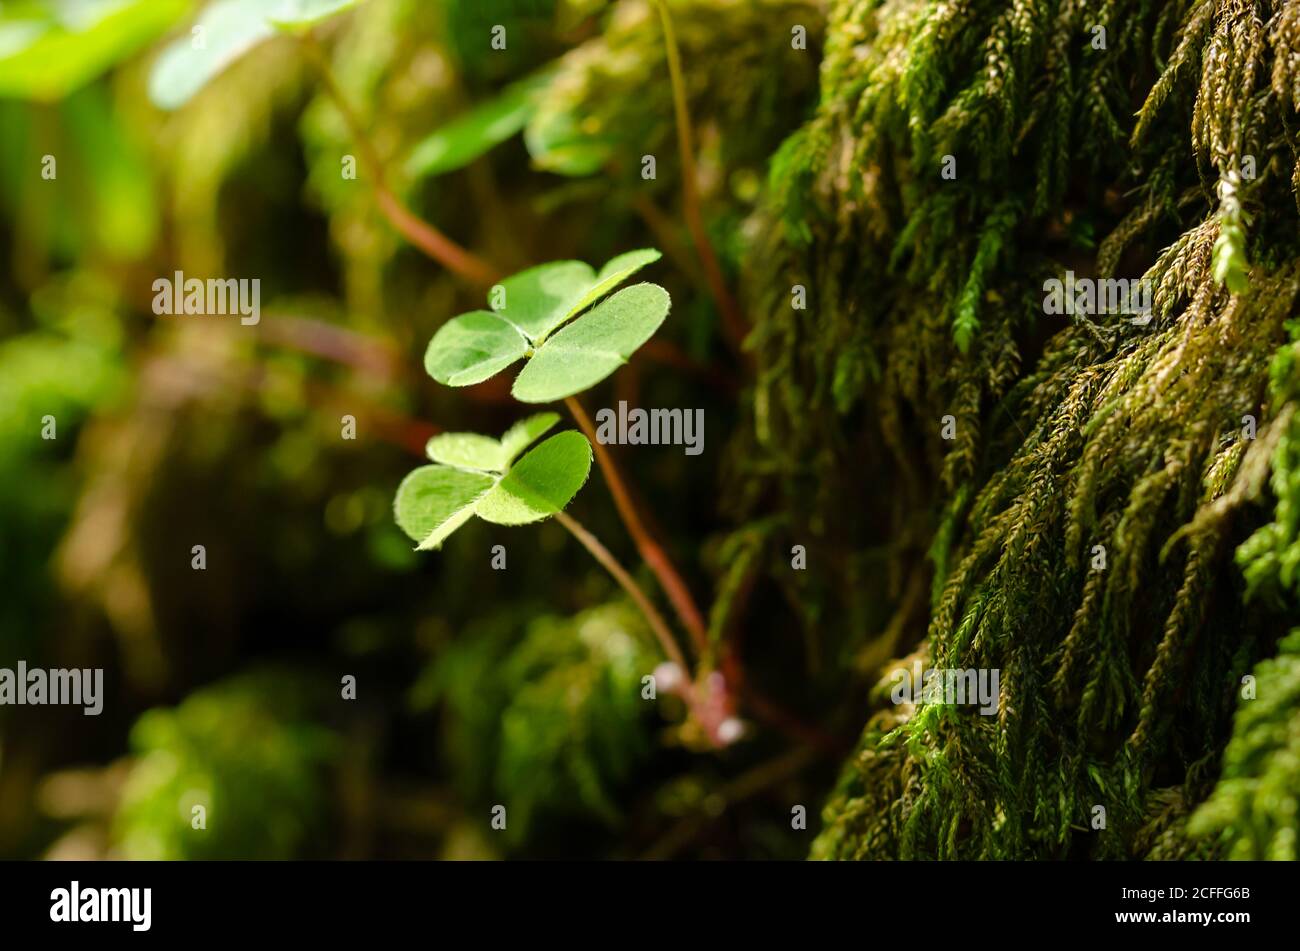 Sorrel di legno, che cresce su una pietra di muschio verde nella foresta. Oxalis acetosella, il legno di strel comune, è talvolta riferito a shamrock, dato come un dono. Foto Stock